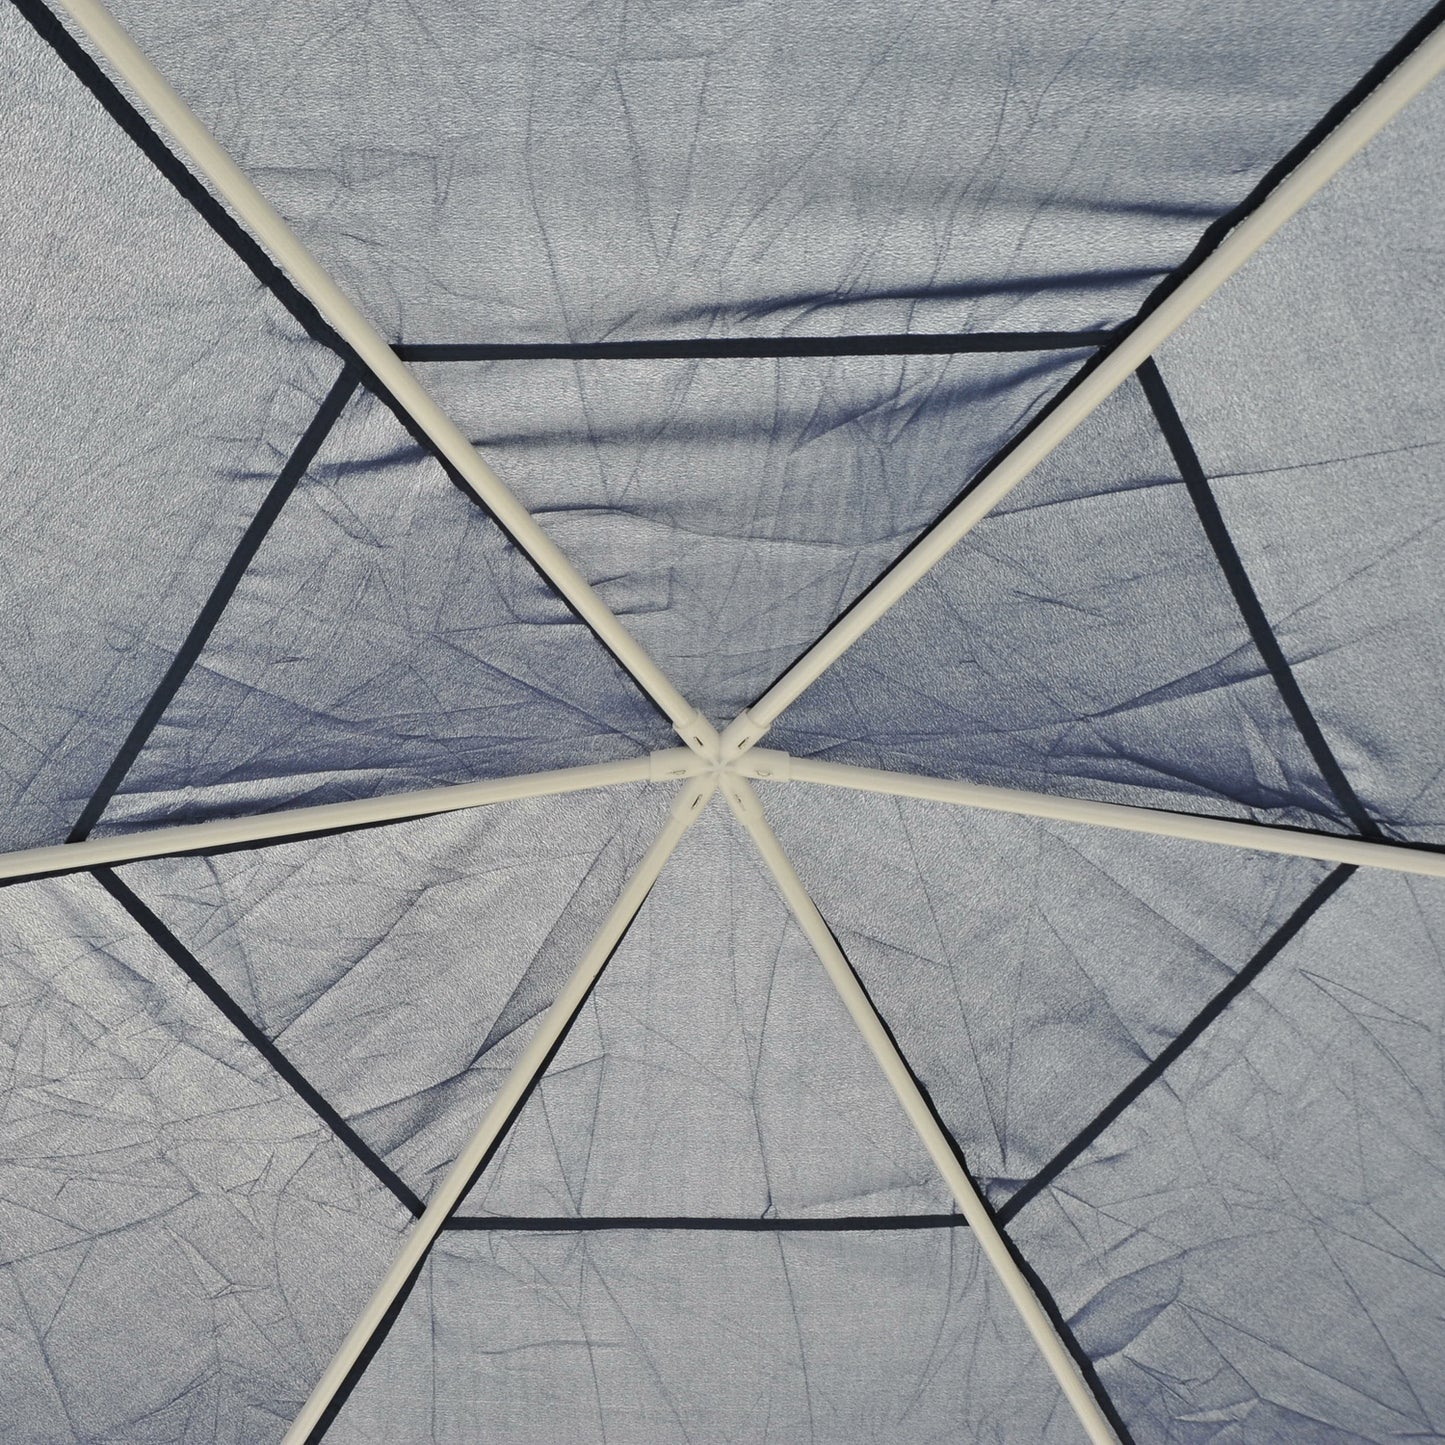 Nancy's Perris Garden Pavilion - Pavilion - Party Tent - 6-Corner - Blue - Metal - Water-repellent - ± 400 x 400 cm